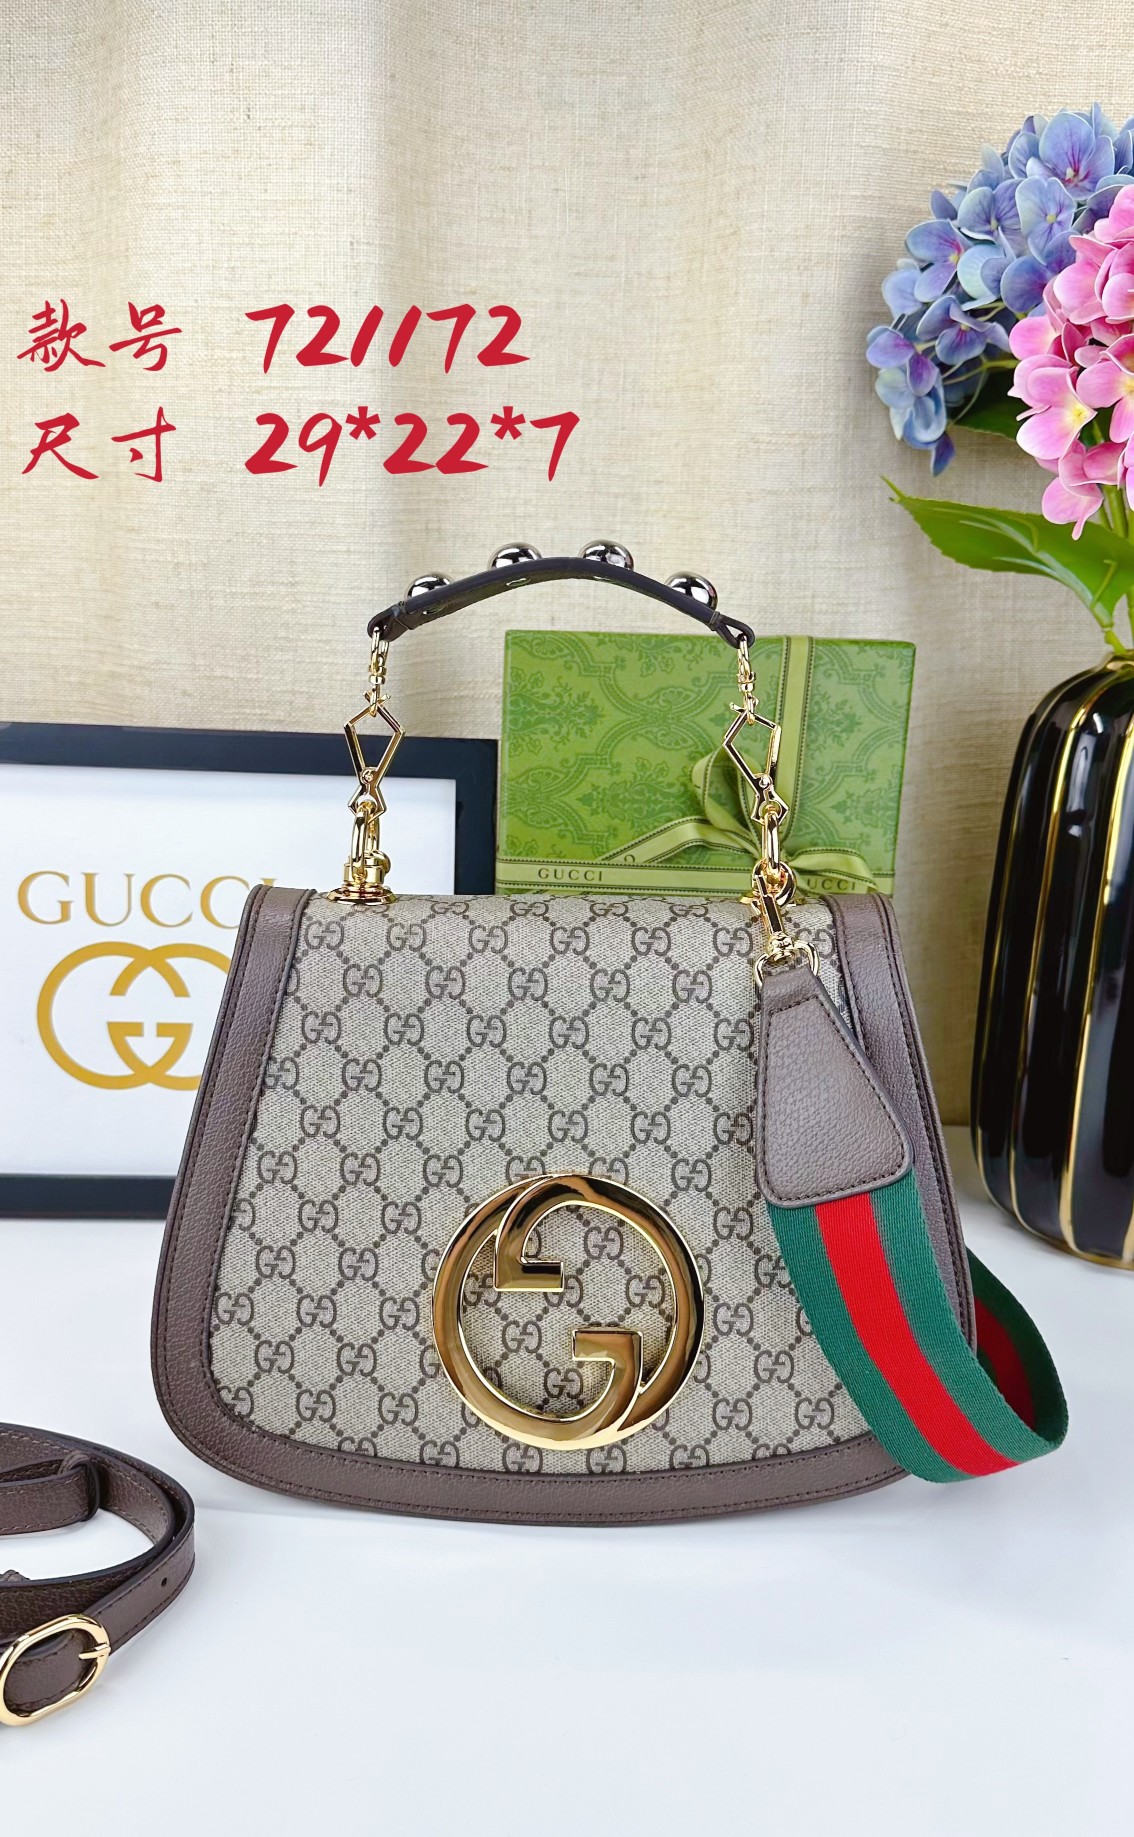  Gucci Blondie Handbags